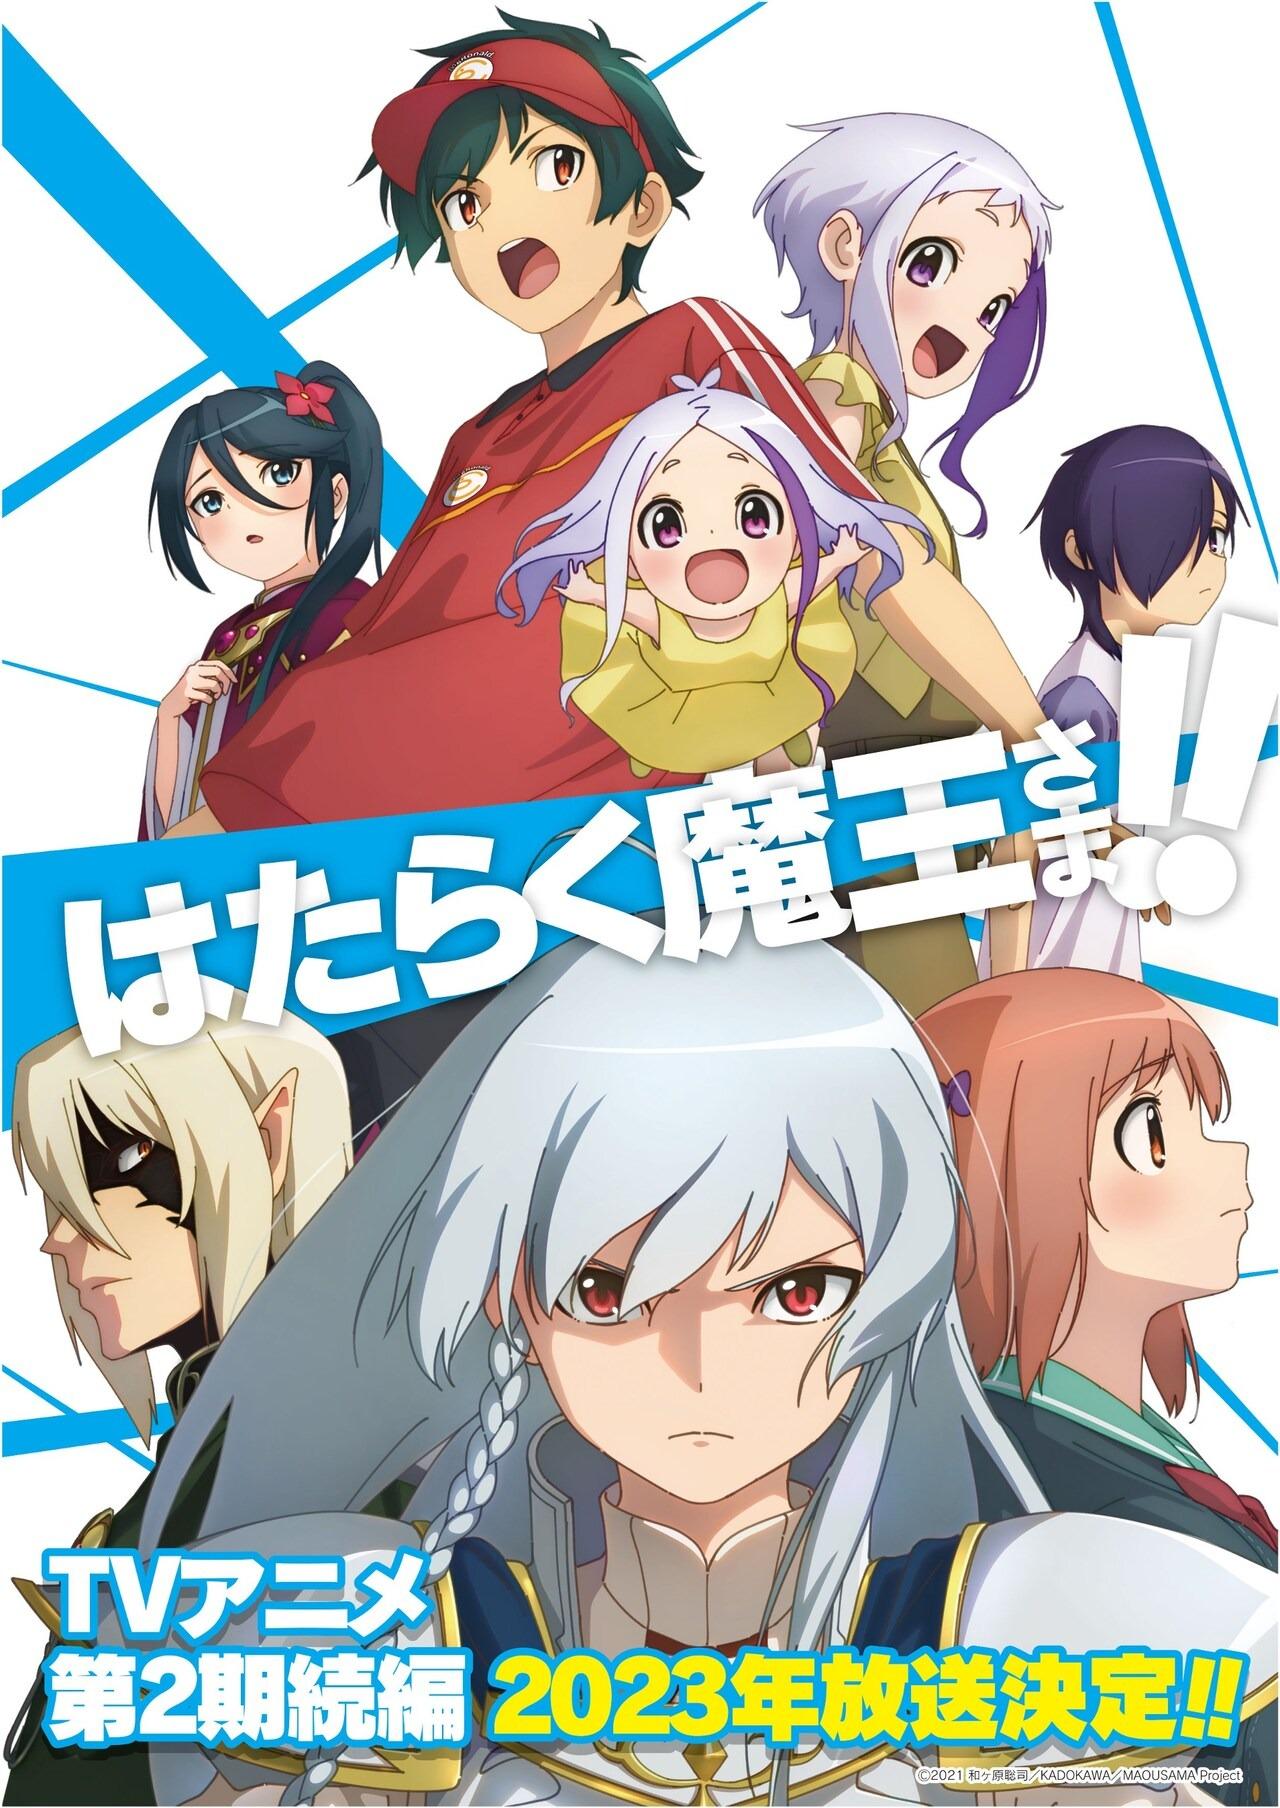 El anime Hataraku Maou-sama! contara con otra secuela para el 2023